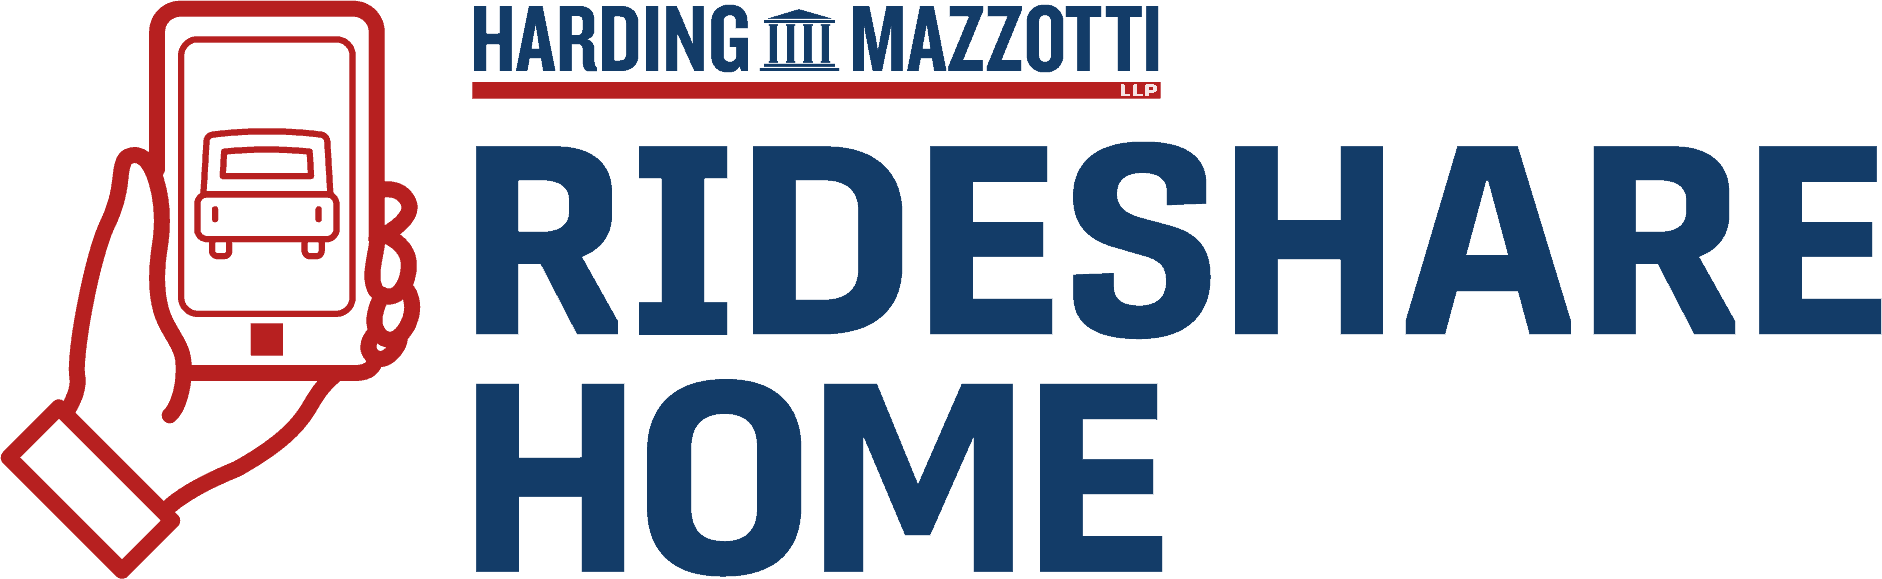 Harding Mazzotti Rideshare Home Program